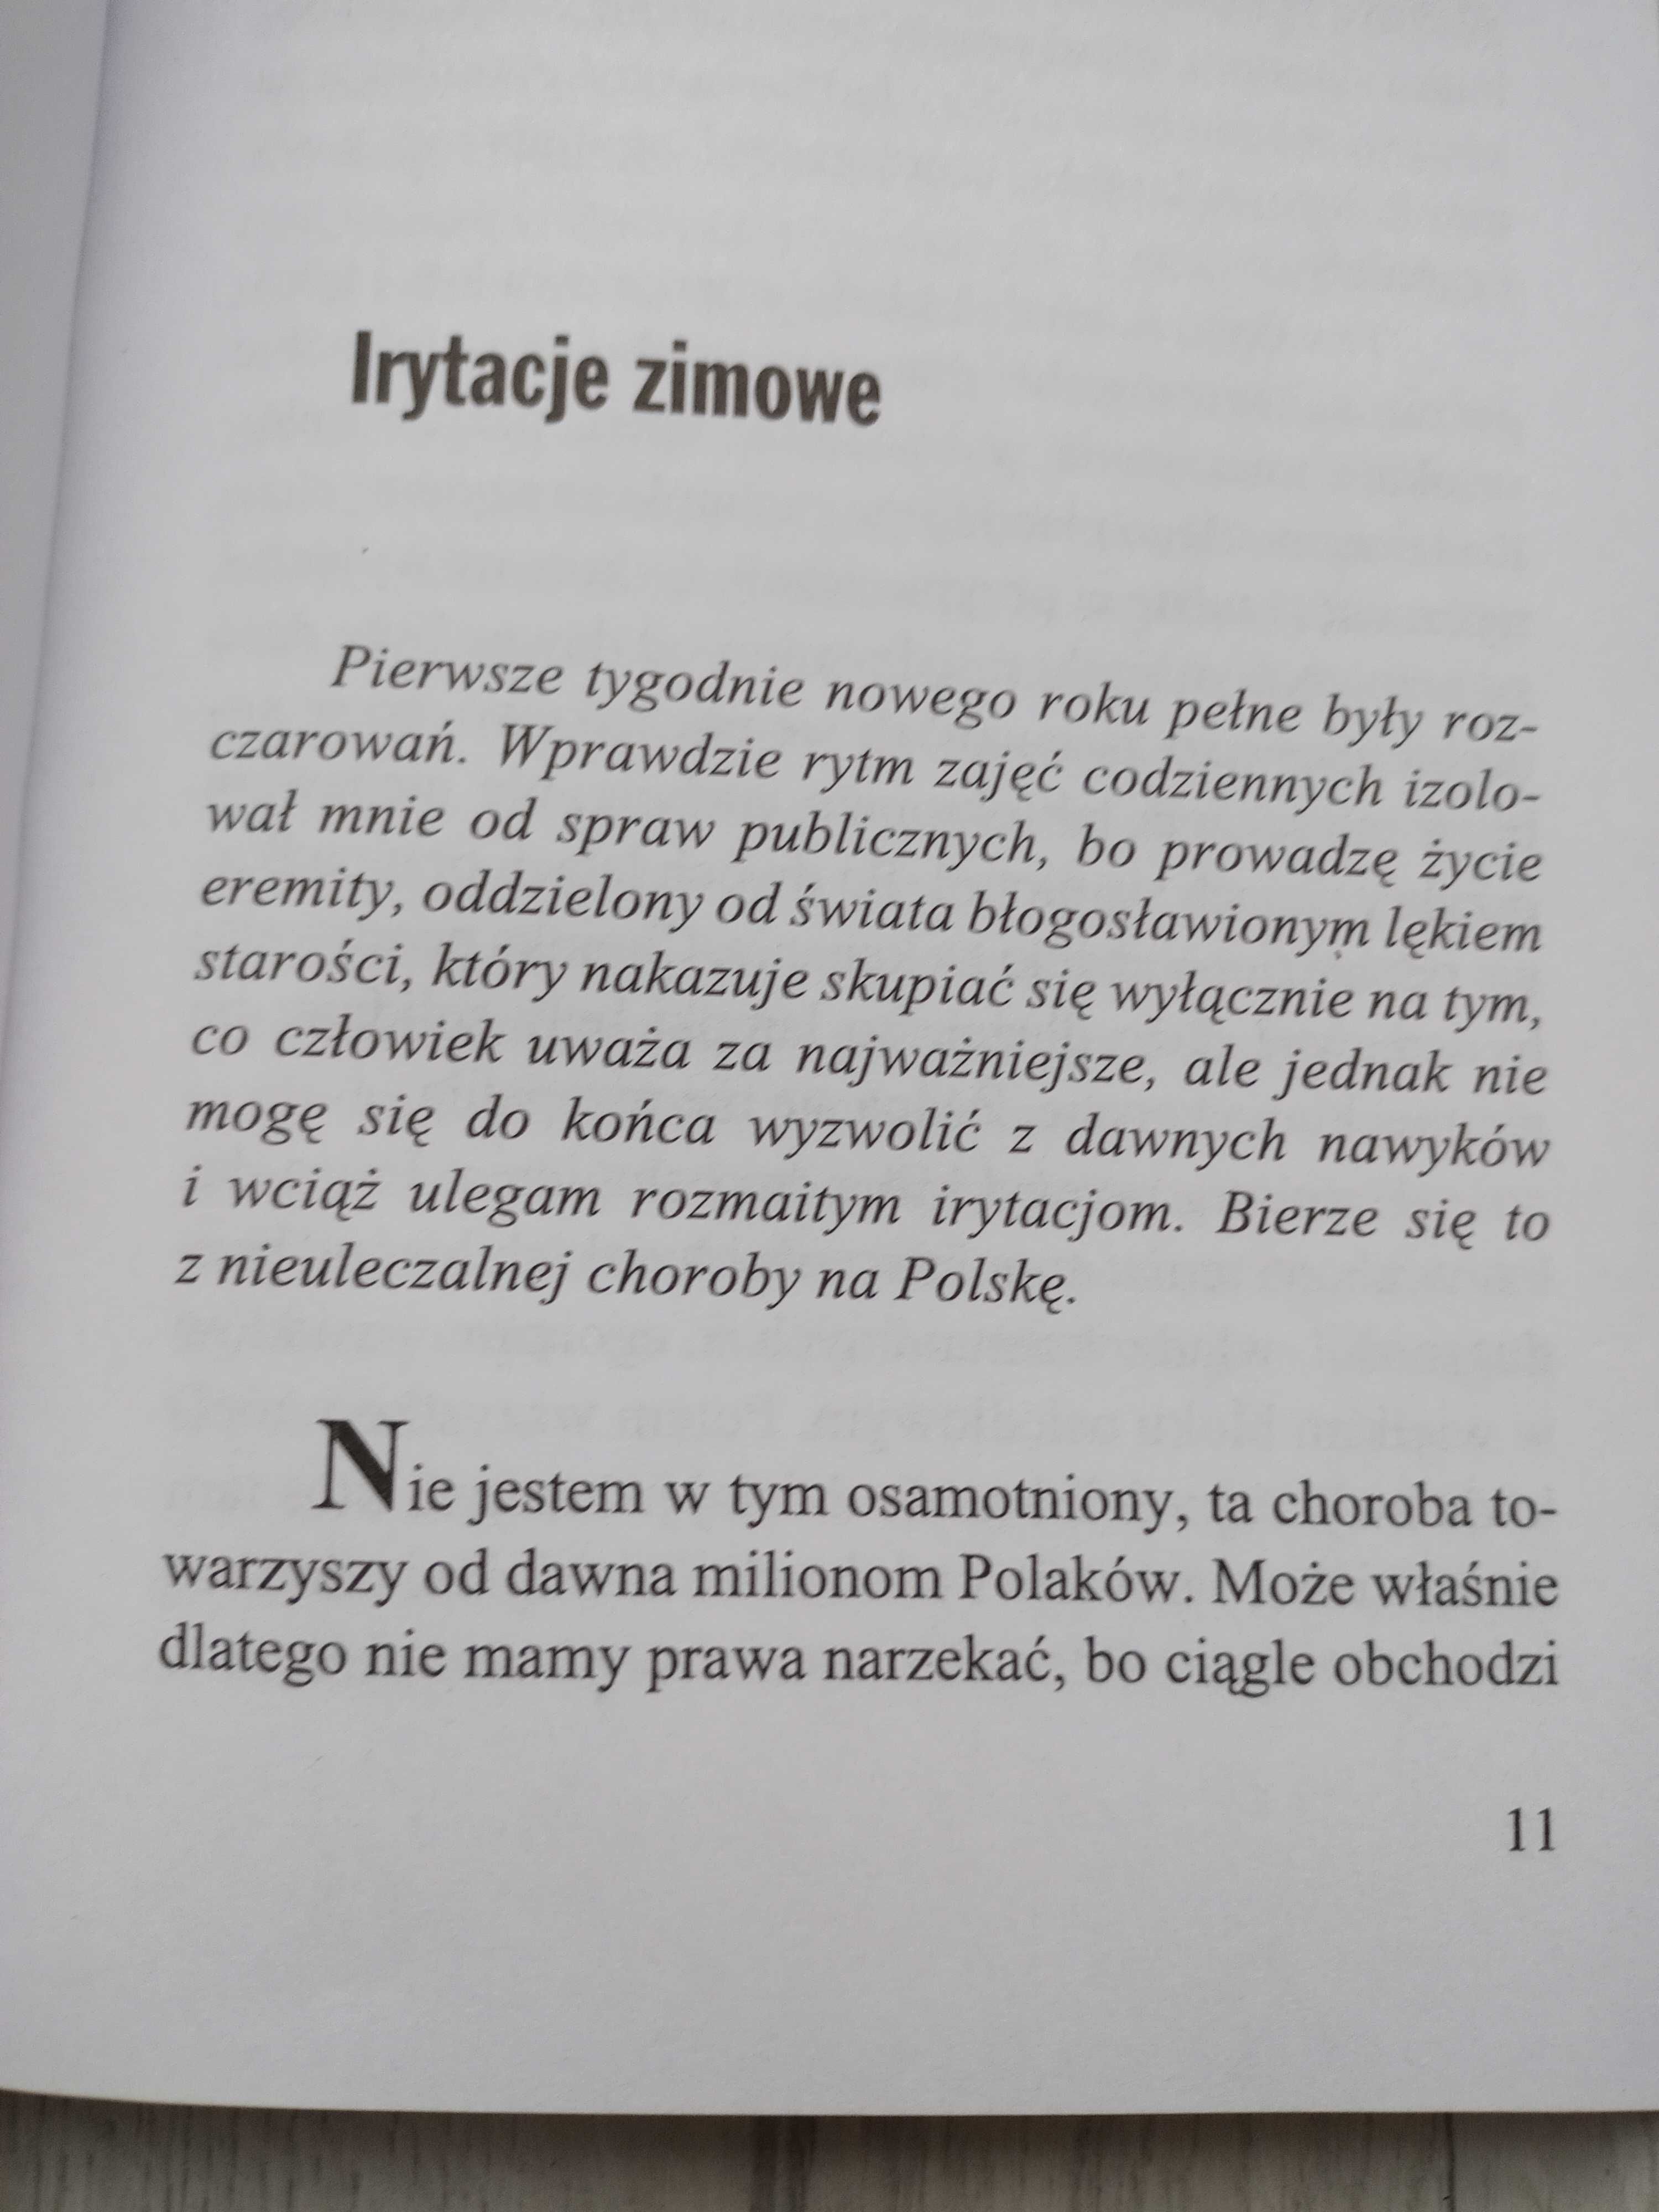 Irytacje Andrzej Szczypiorski